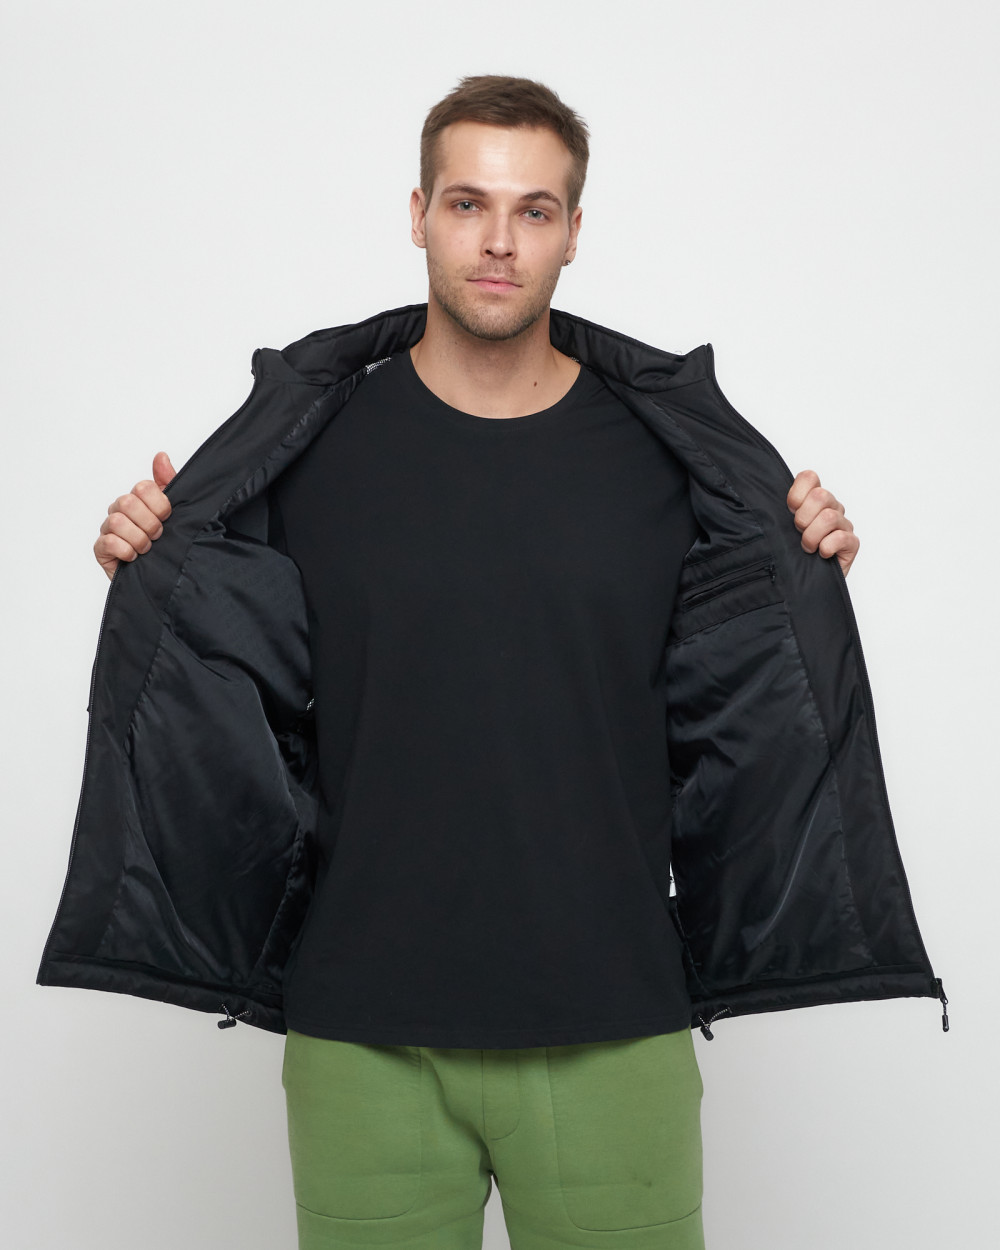 Купить куртку мужскую спортивную весеннюю оптом от производителя недорого в Москве 8816Ch 1